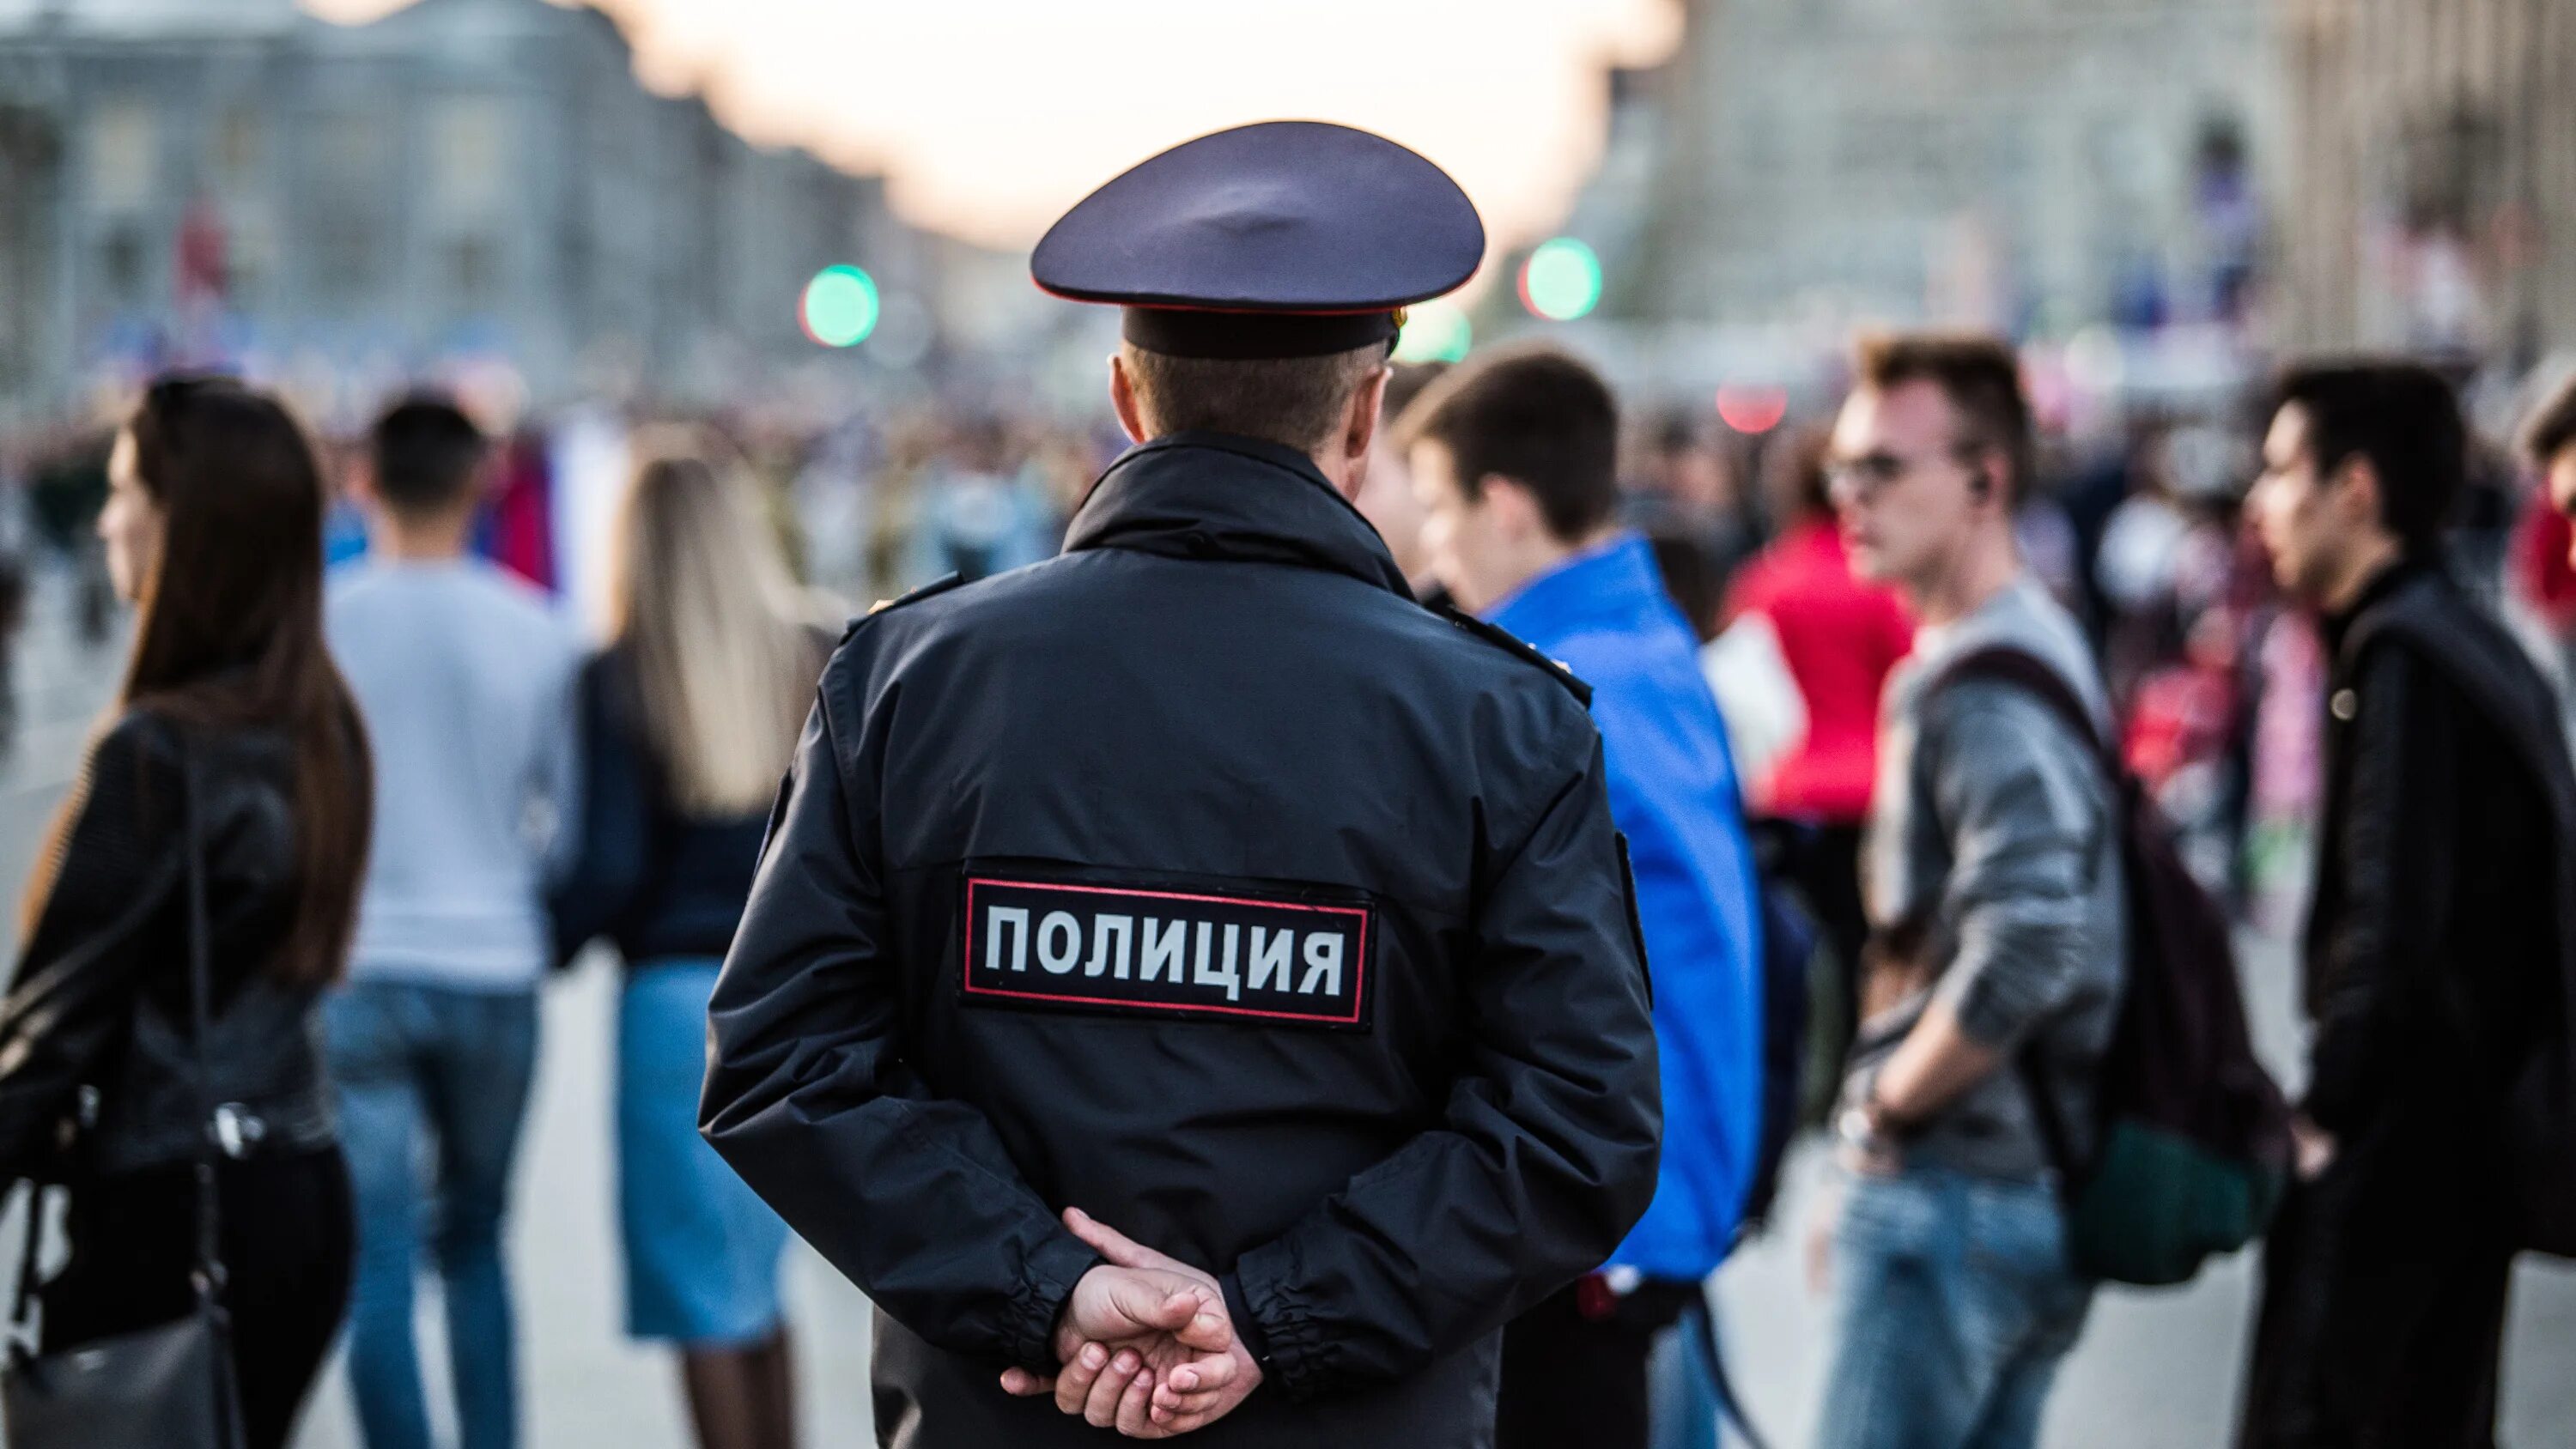 Полиция Новосибирск. Превышение полномочий полиции. Фото полицейского.